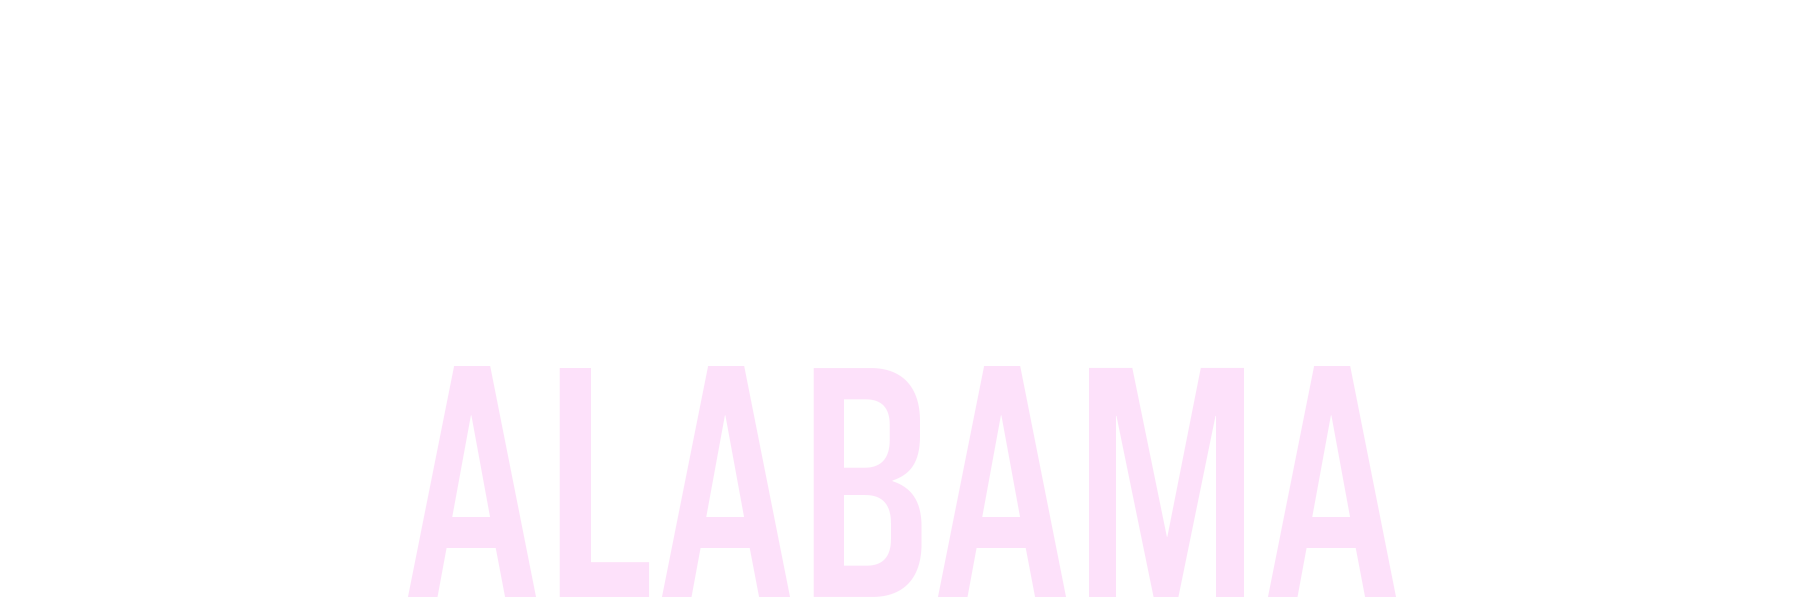 Techdays Alabama